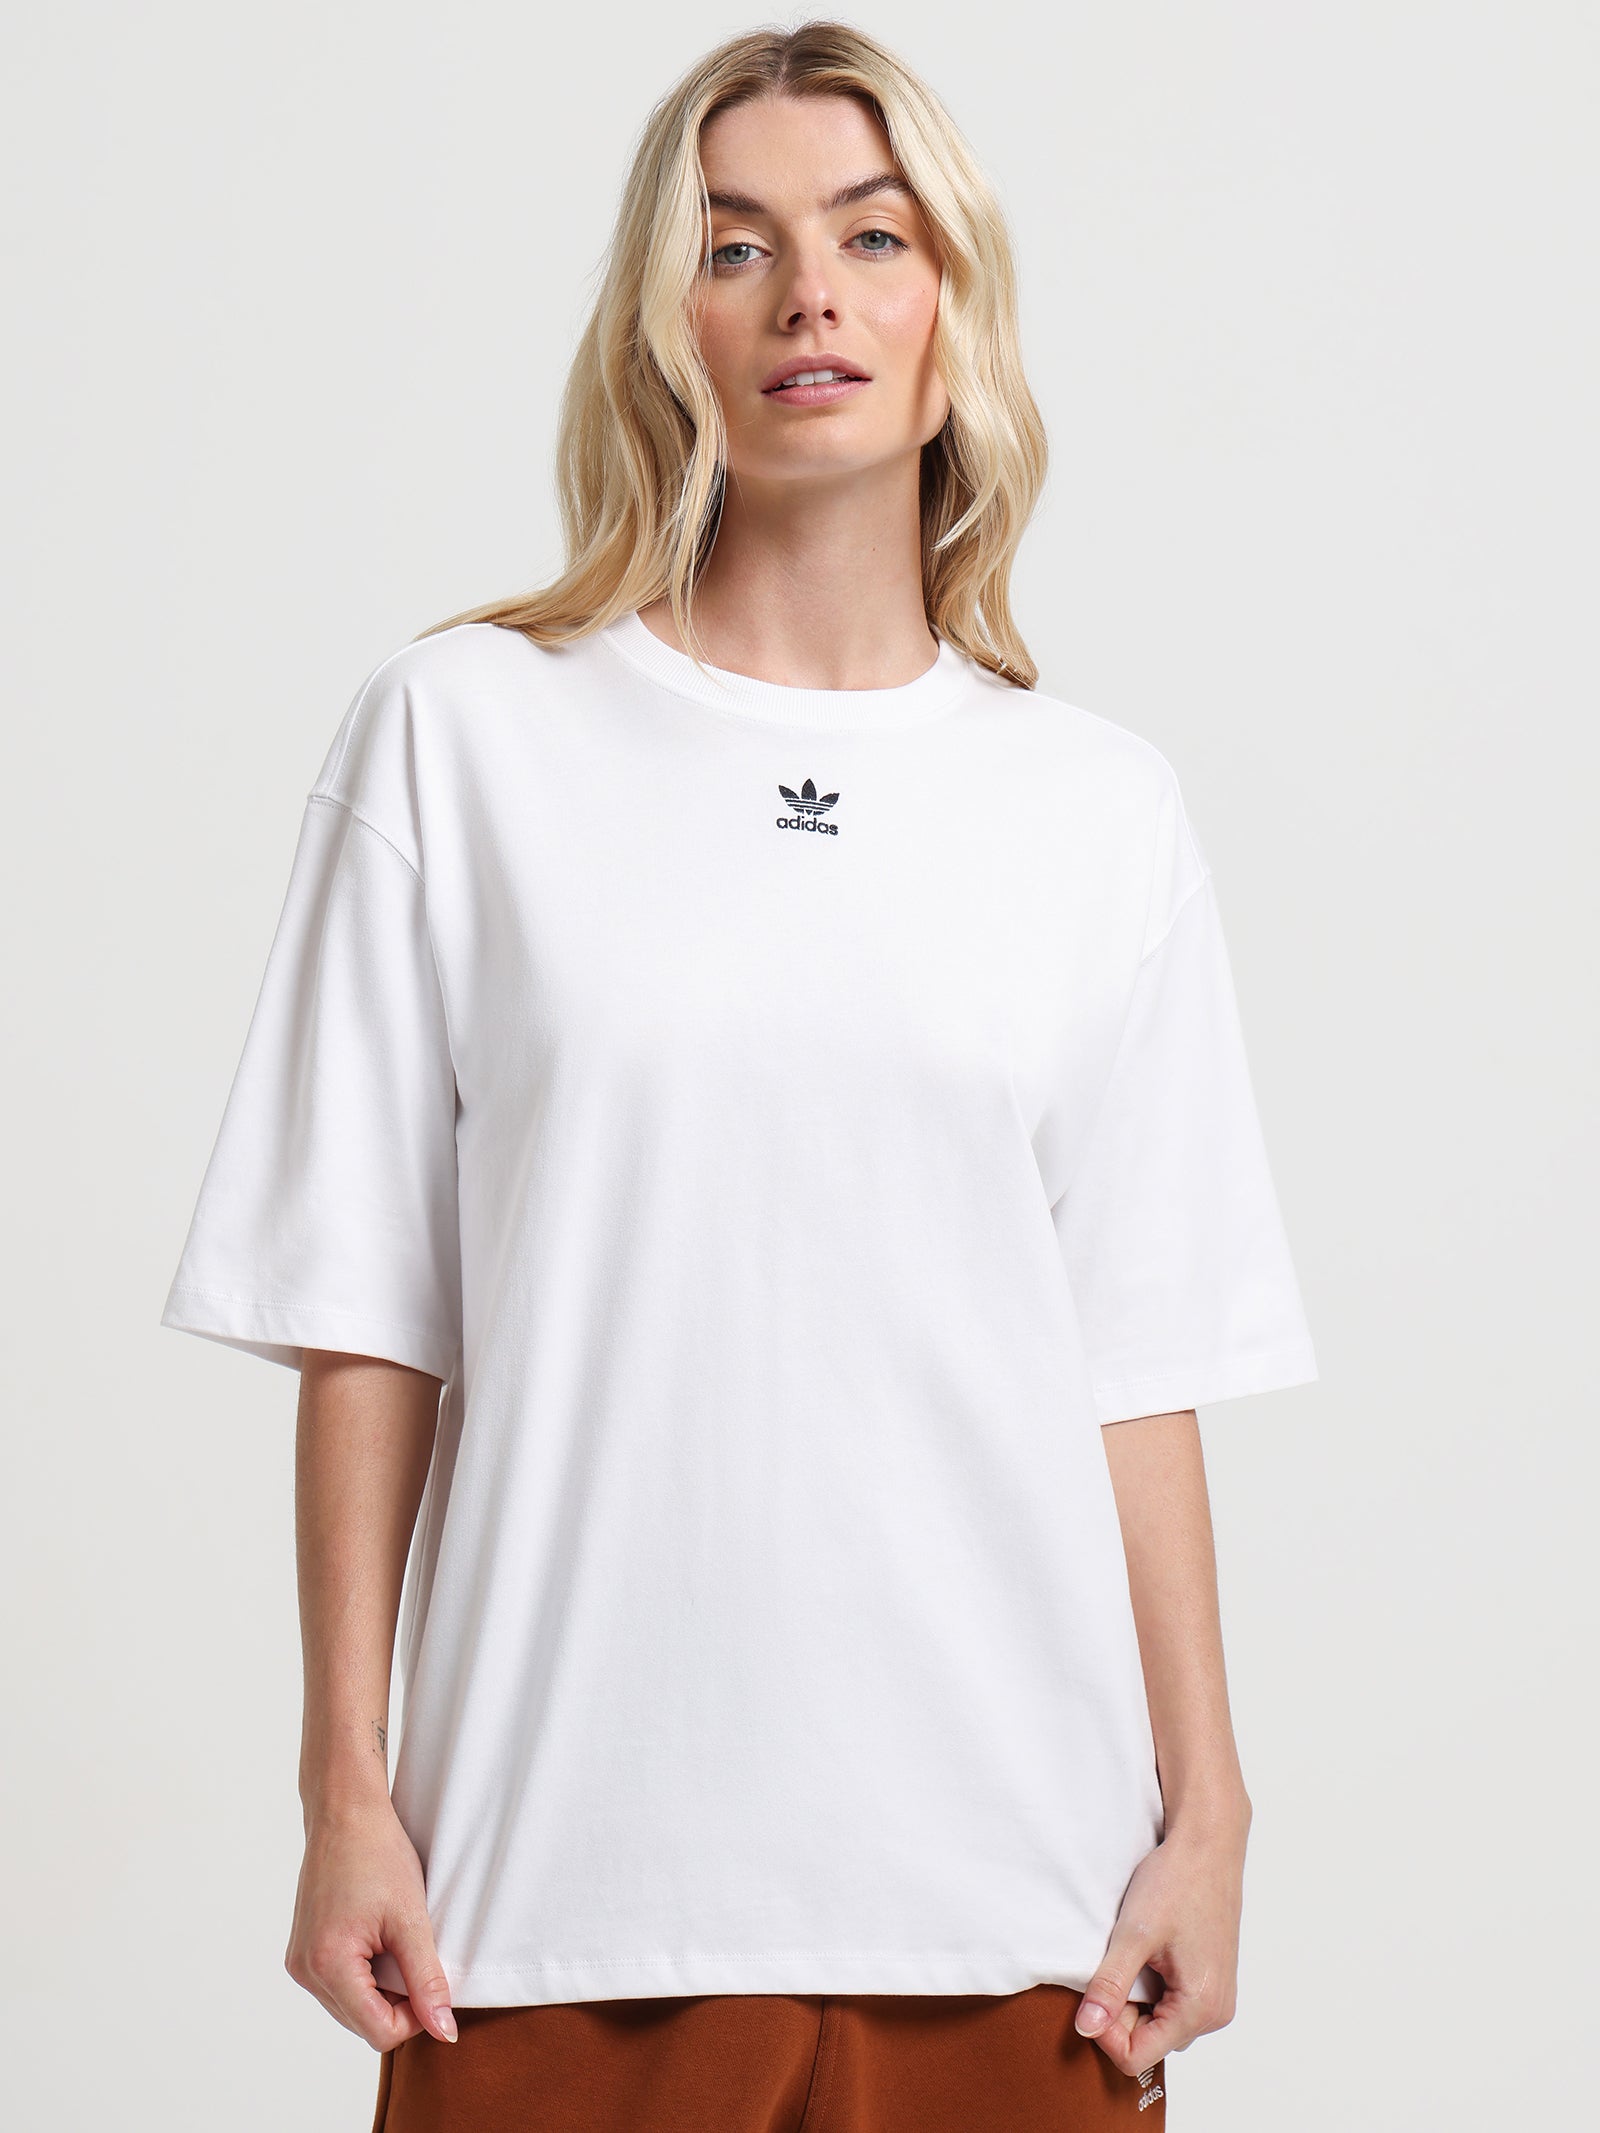 Adicolor Essentials T-Shirt in Glue Store White 